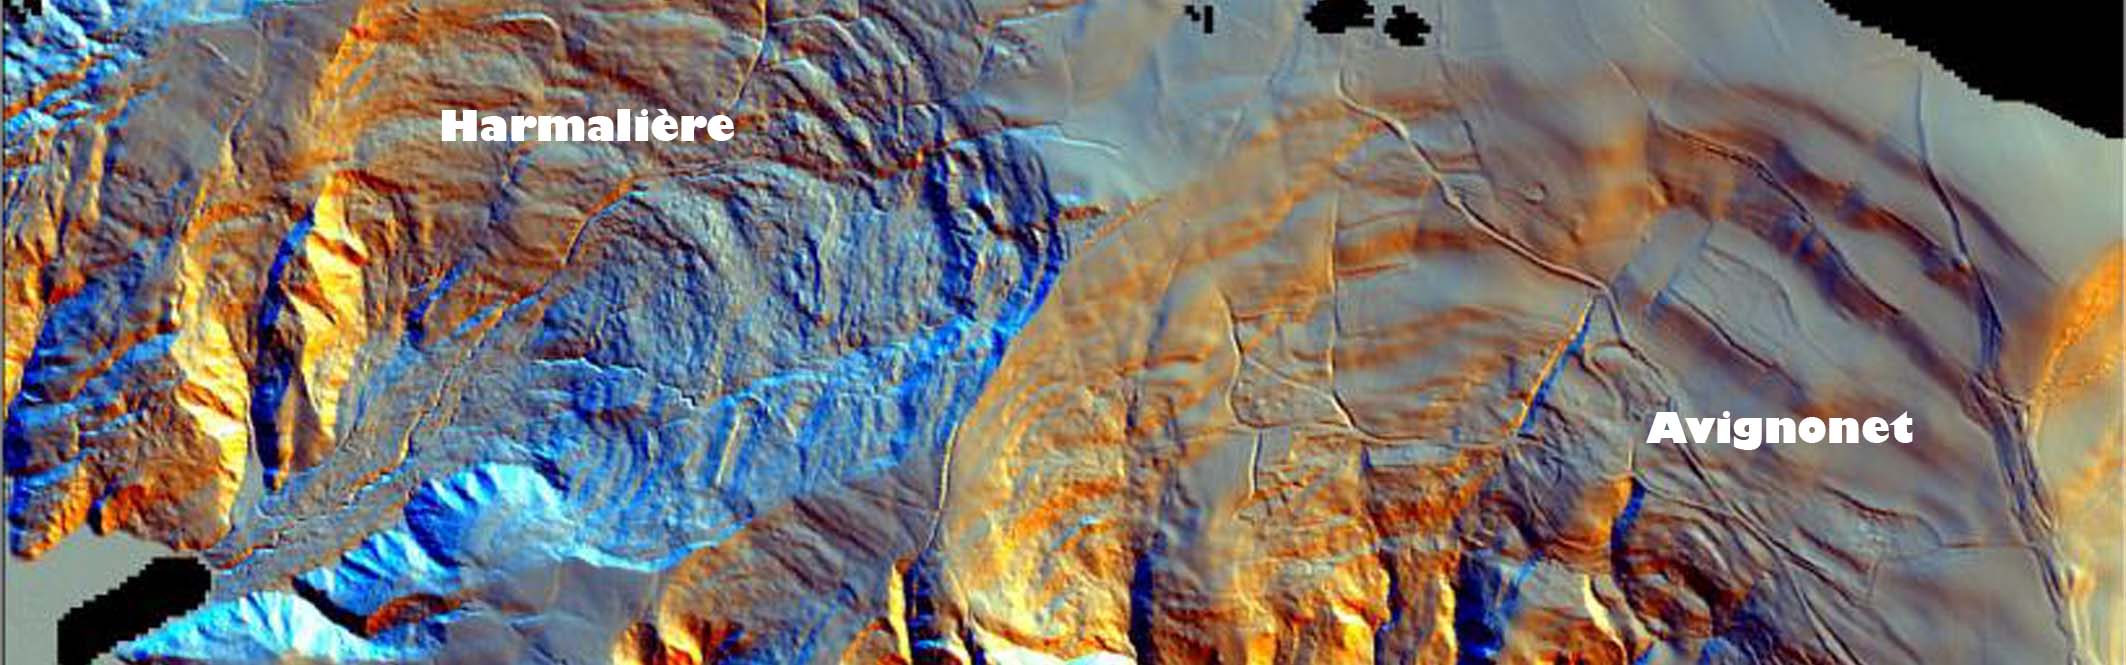 Avignonet/Harmalière landslides: airborne LiDAR wiew of the landslide morphology in 2007